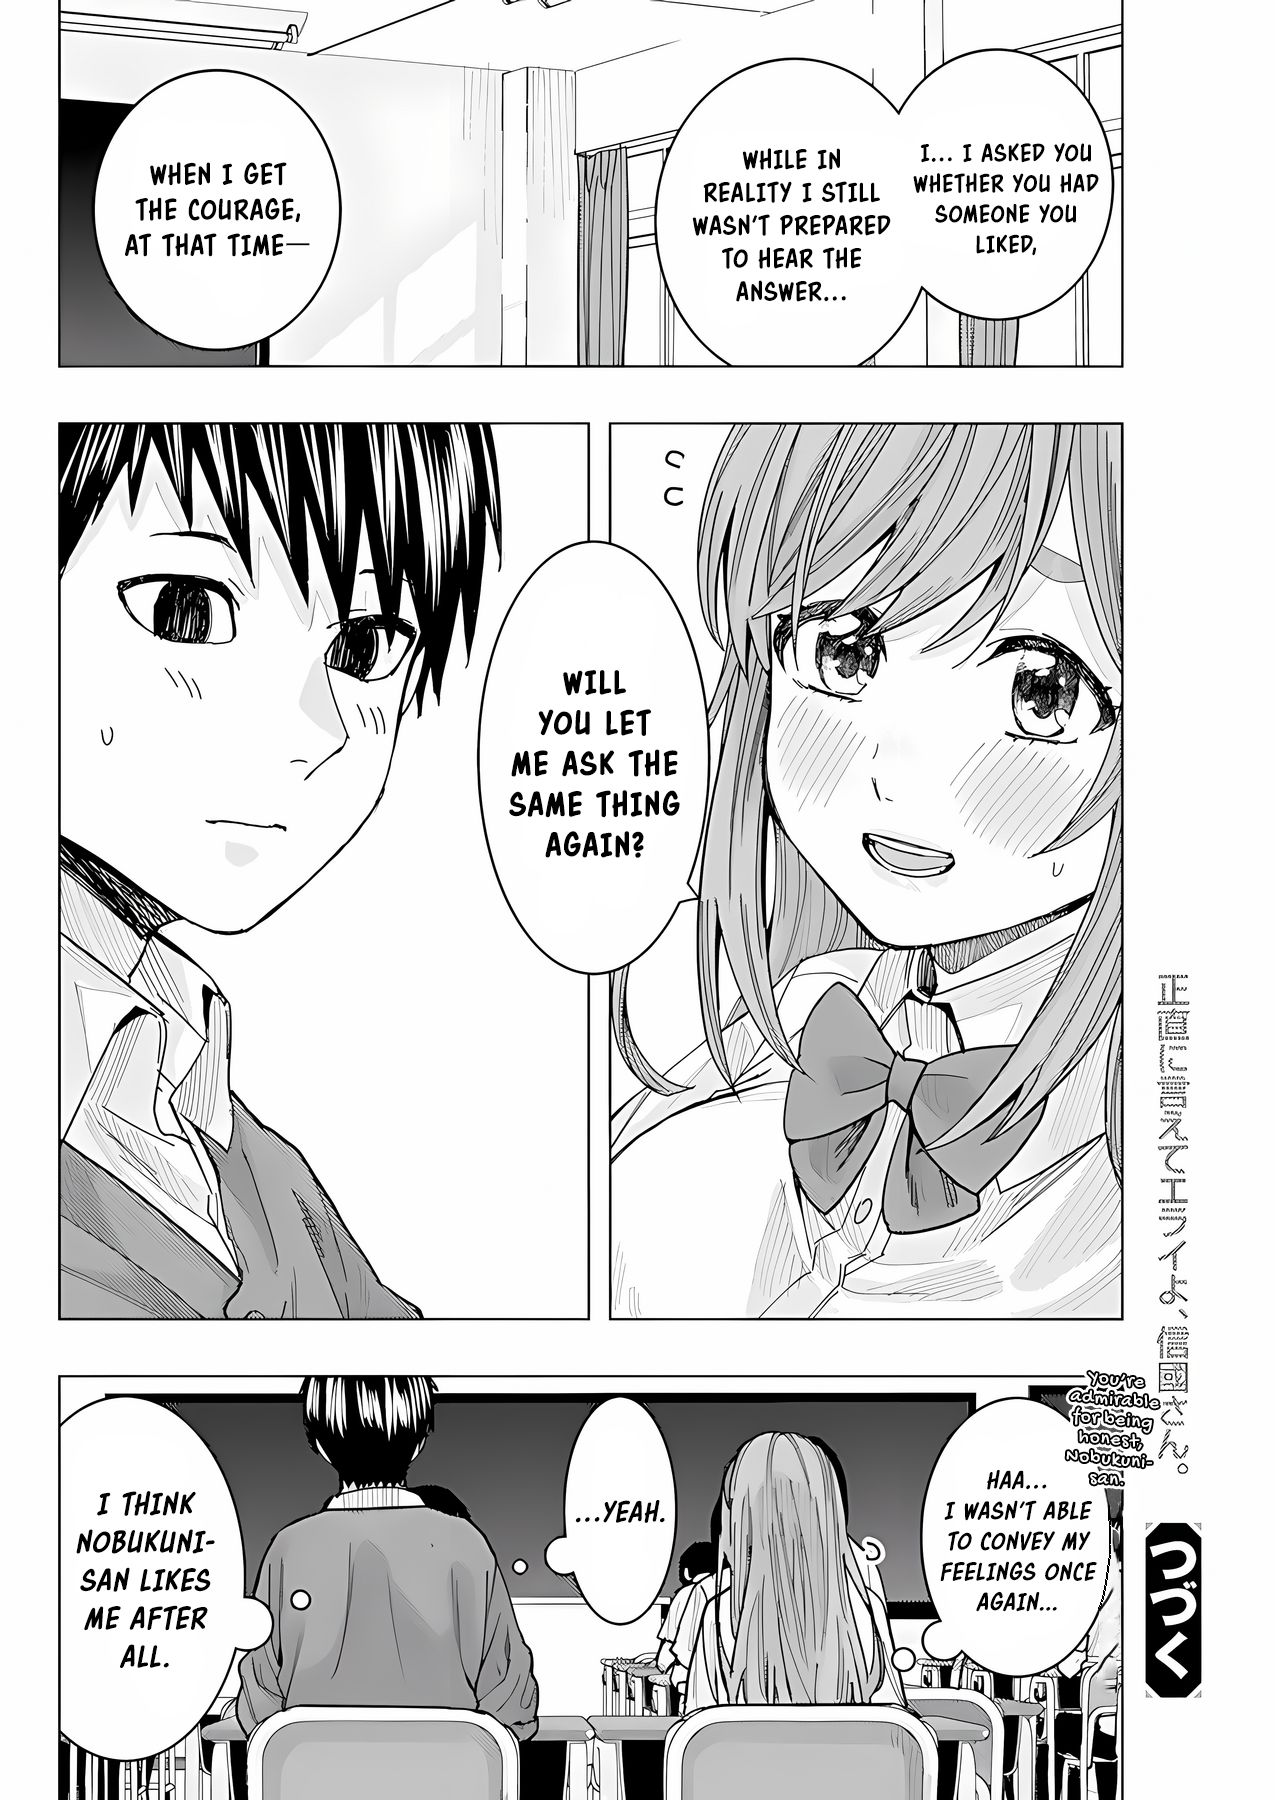 "nobukuni-San" Does She Like Me? Chapter 21 #15